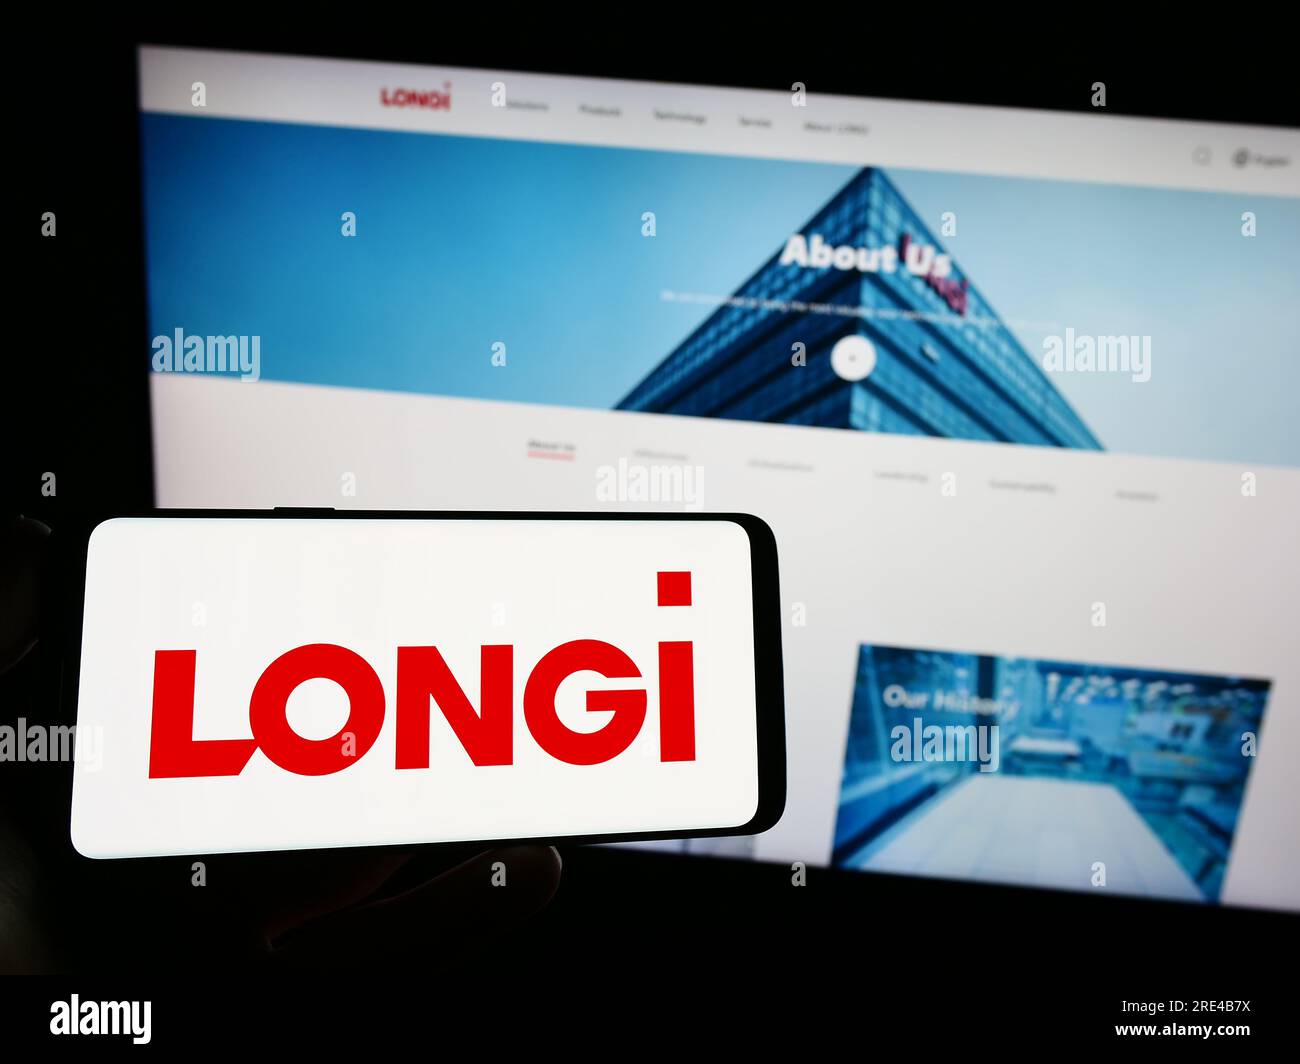 Persona que sostiene el teléfono inteligente con el logotipo de la compañía longi Green Energy Technology Co. Ltd. En la pantalla delante del sitio web. Enfoque en la pantalla del teléfono. Foto de stock